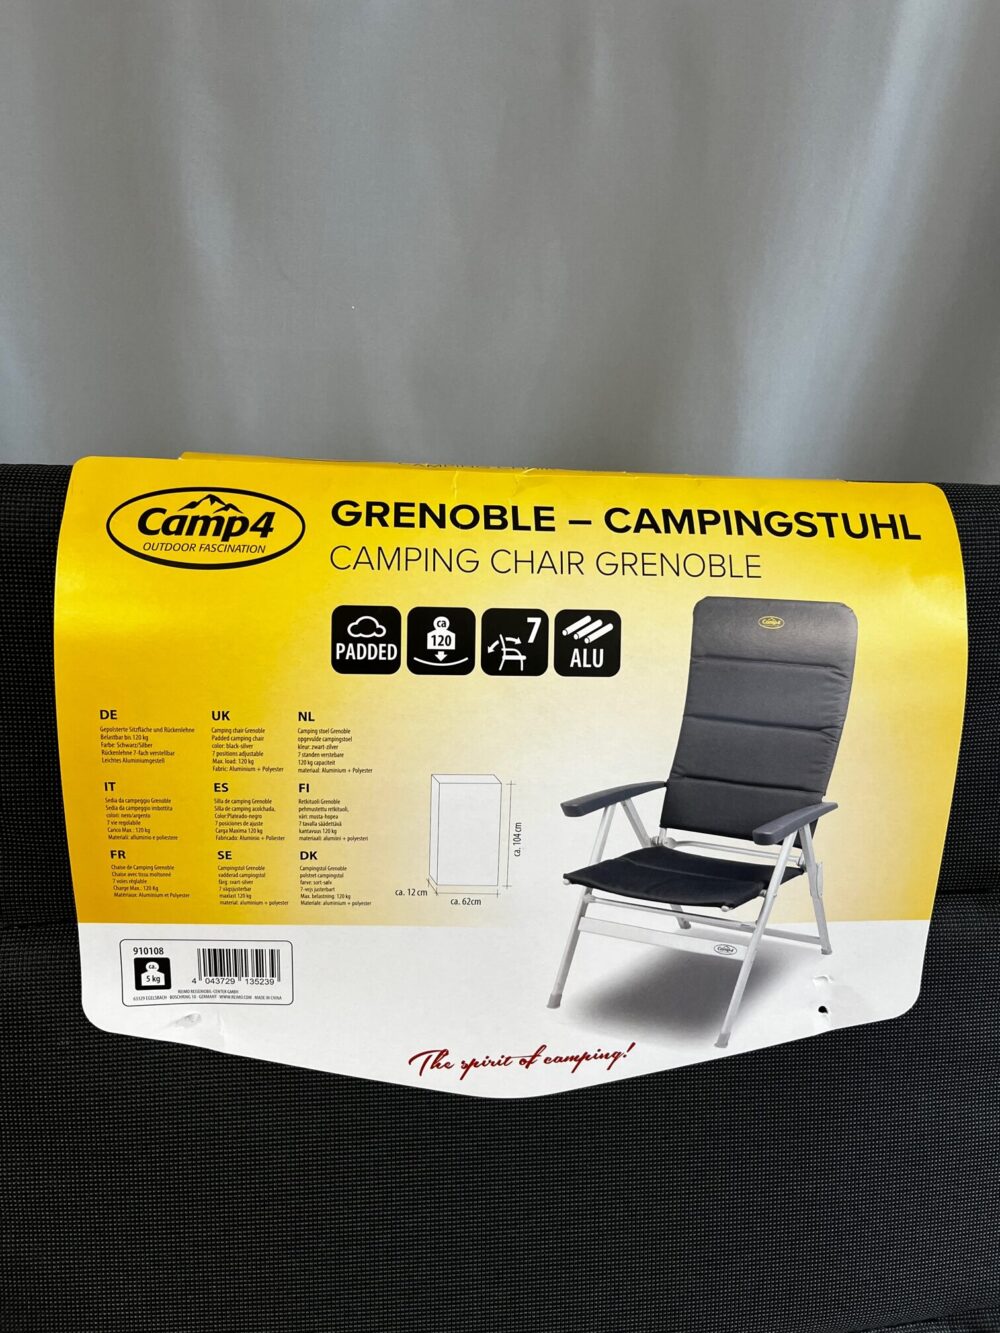 Camp4 Grenoble Alu Campingstuhl